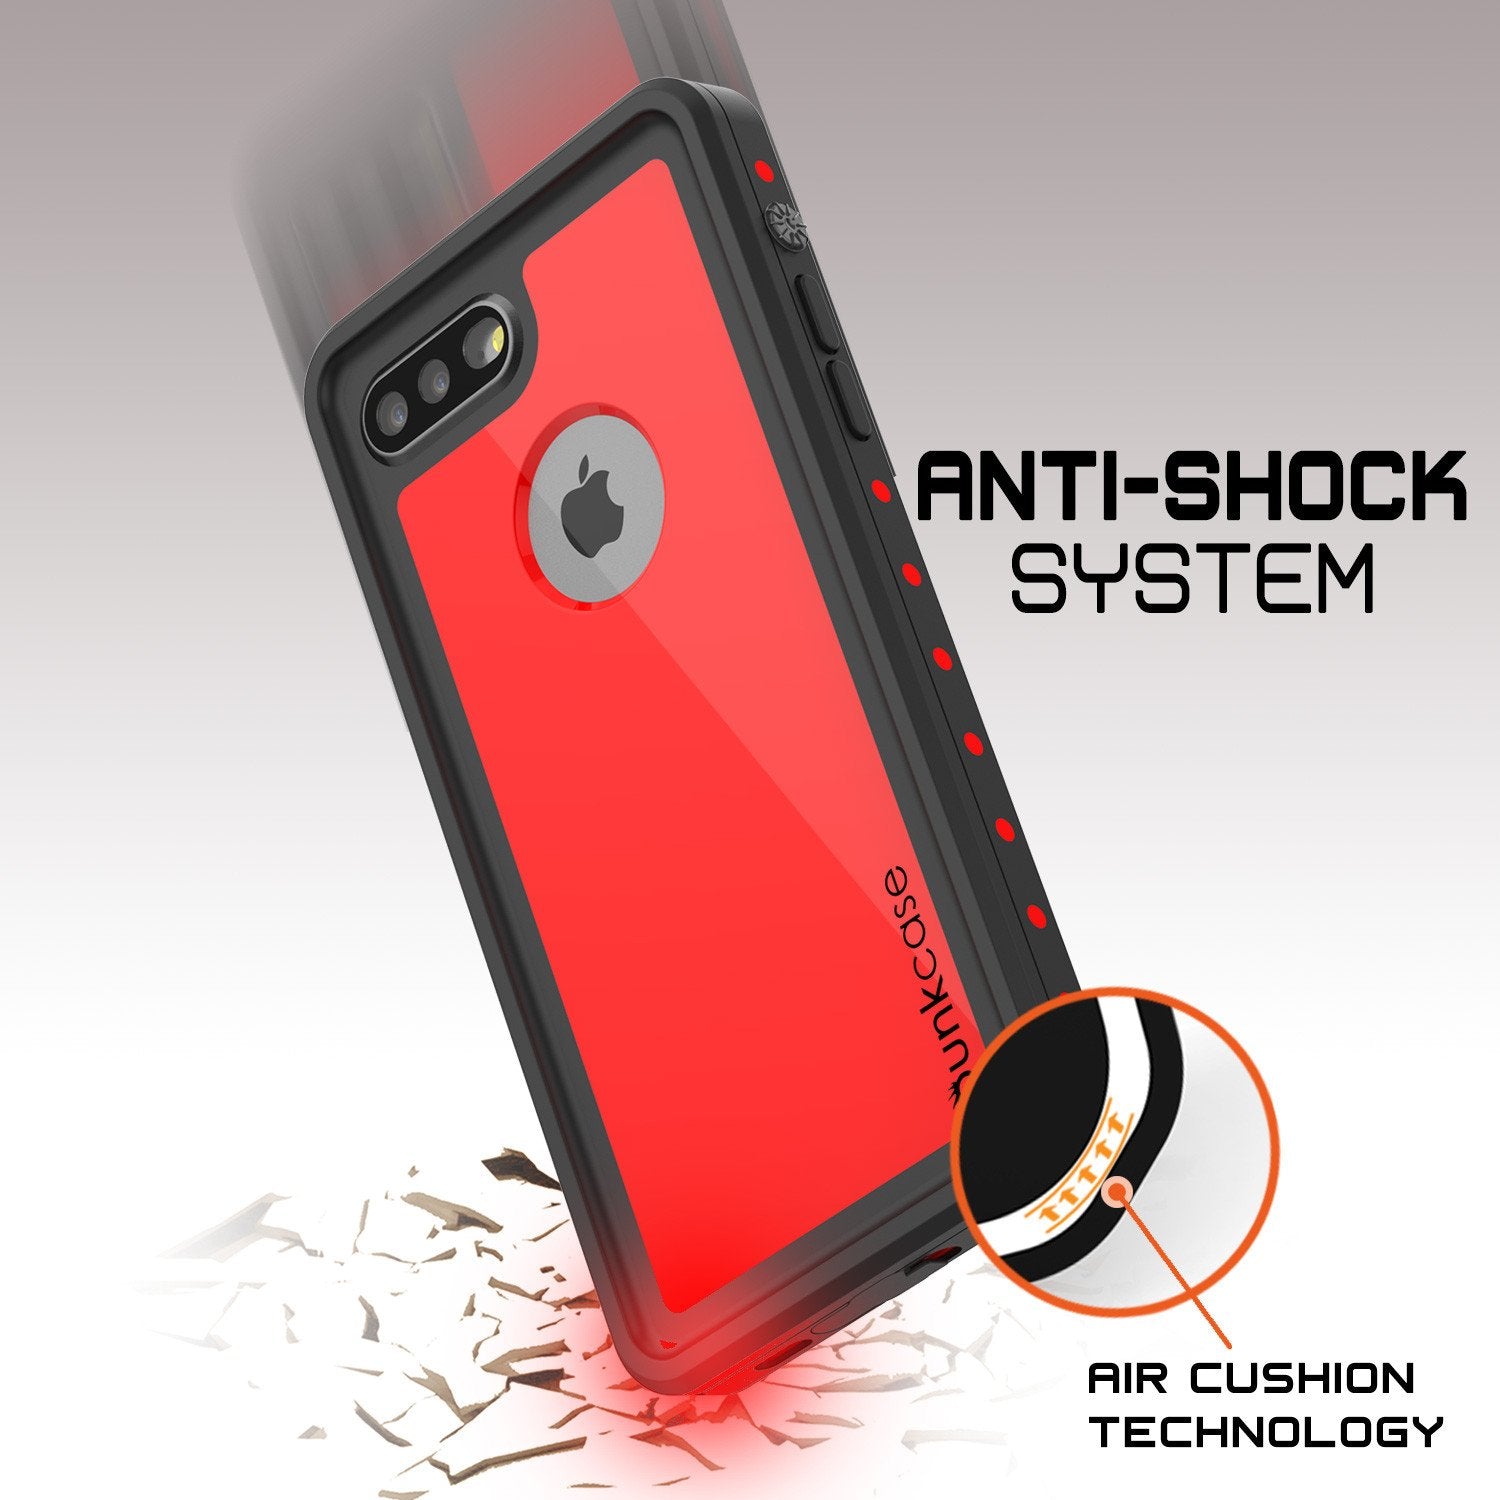 iPhone 7+ Plus Waterproof IP68 Case, Punkcase [Red] [StudStar Series] [Slim Fit] [Dirtproof]